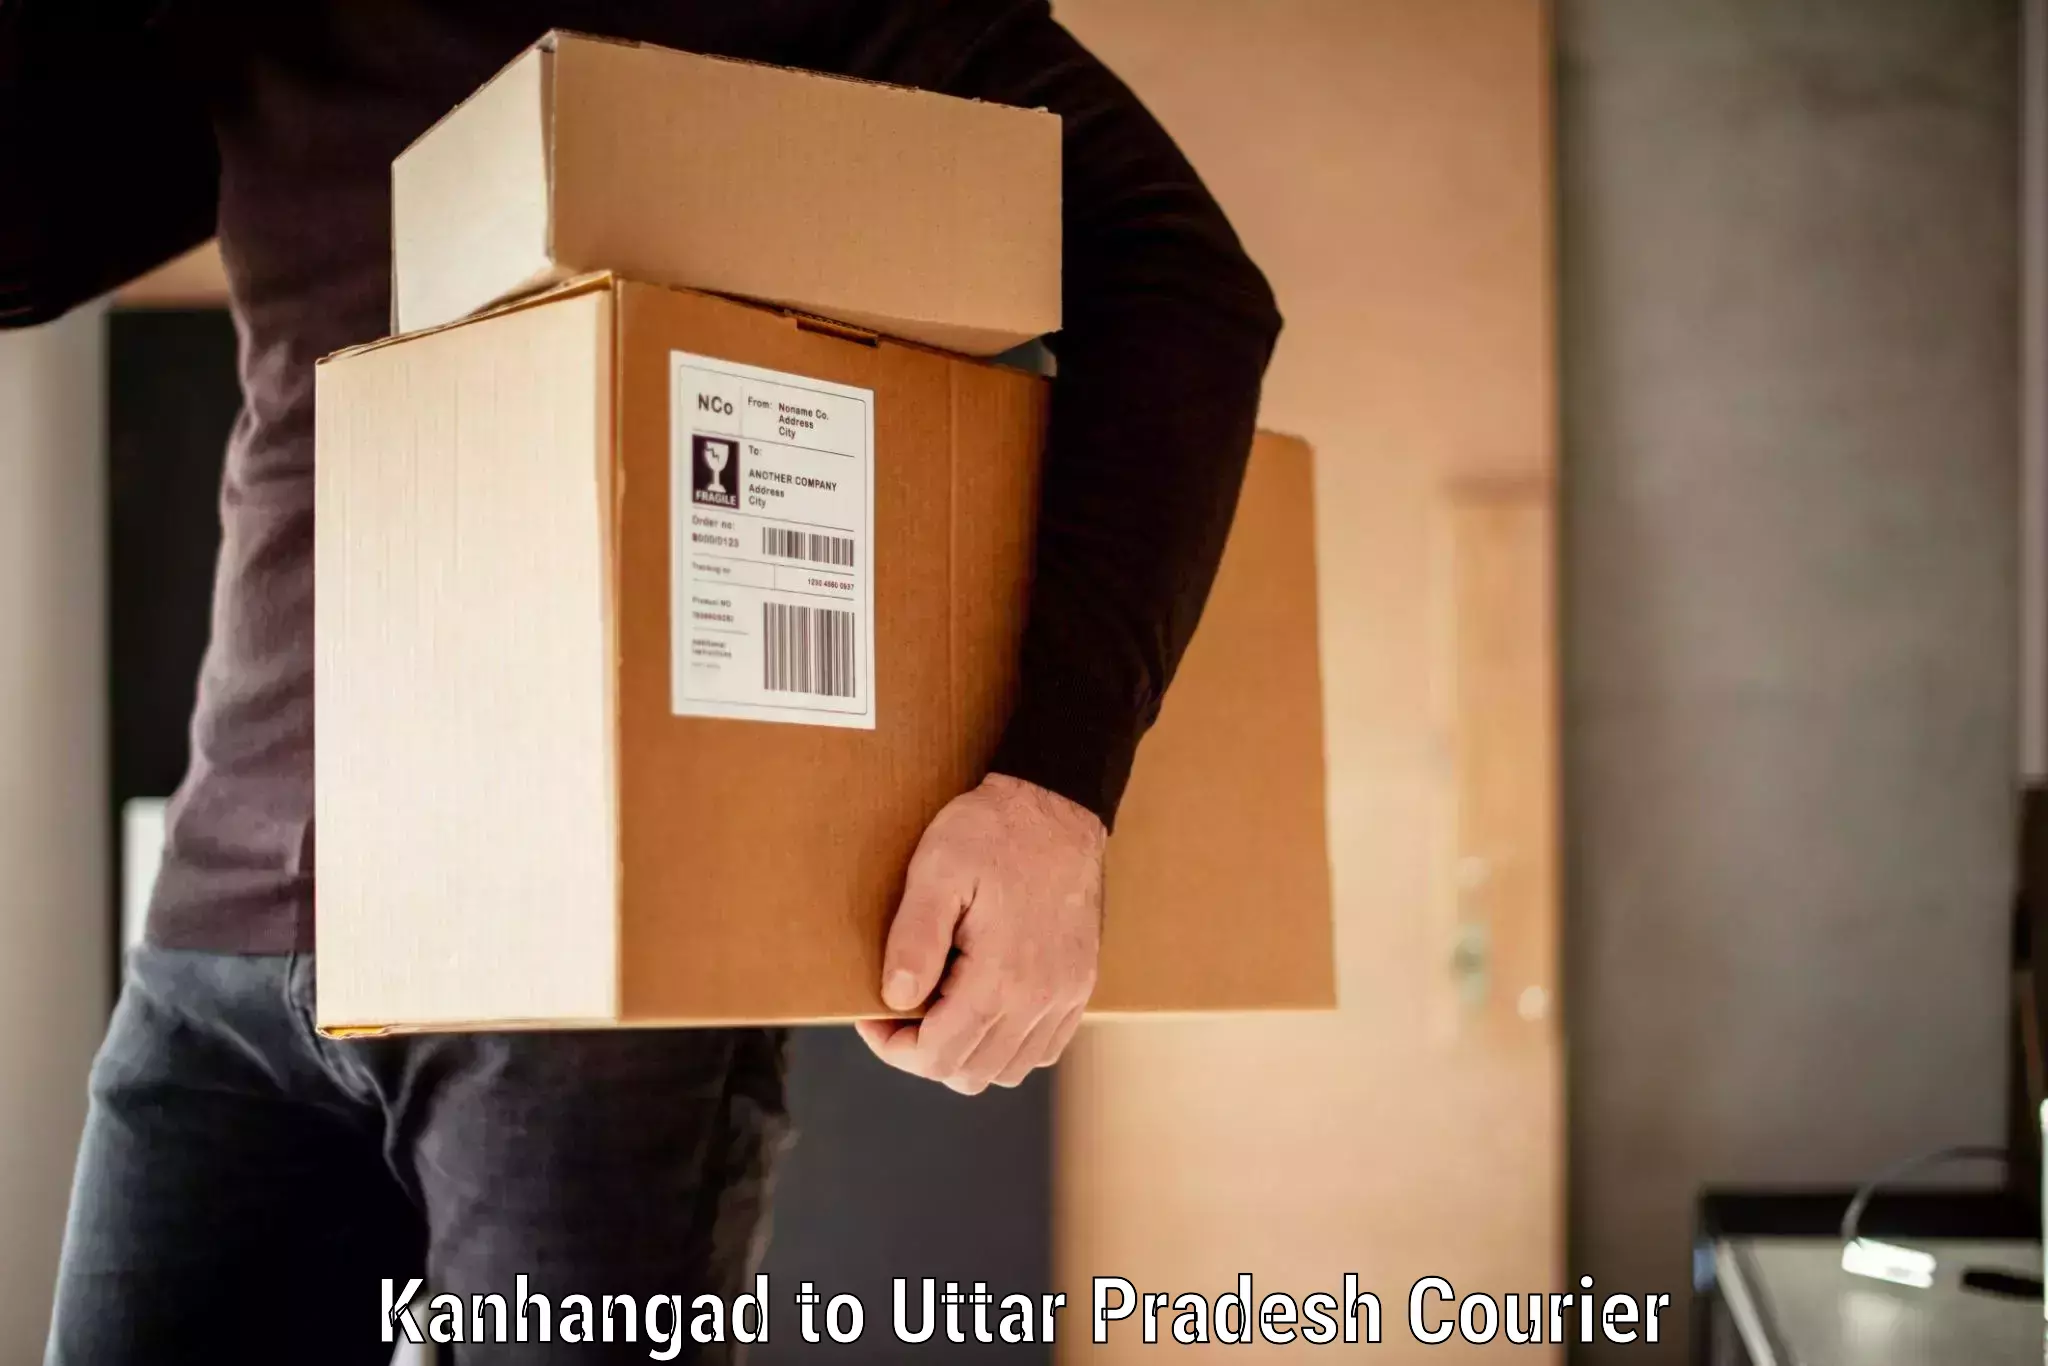 Baggage shipping rates calculator Kanhangad to Prayagraj